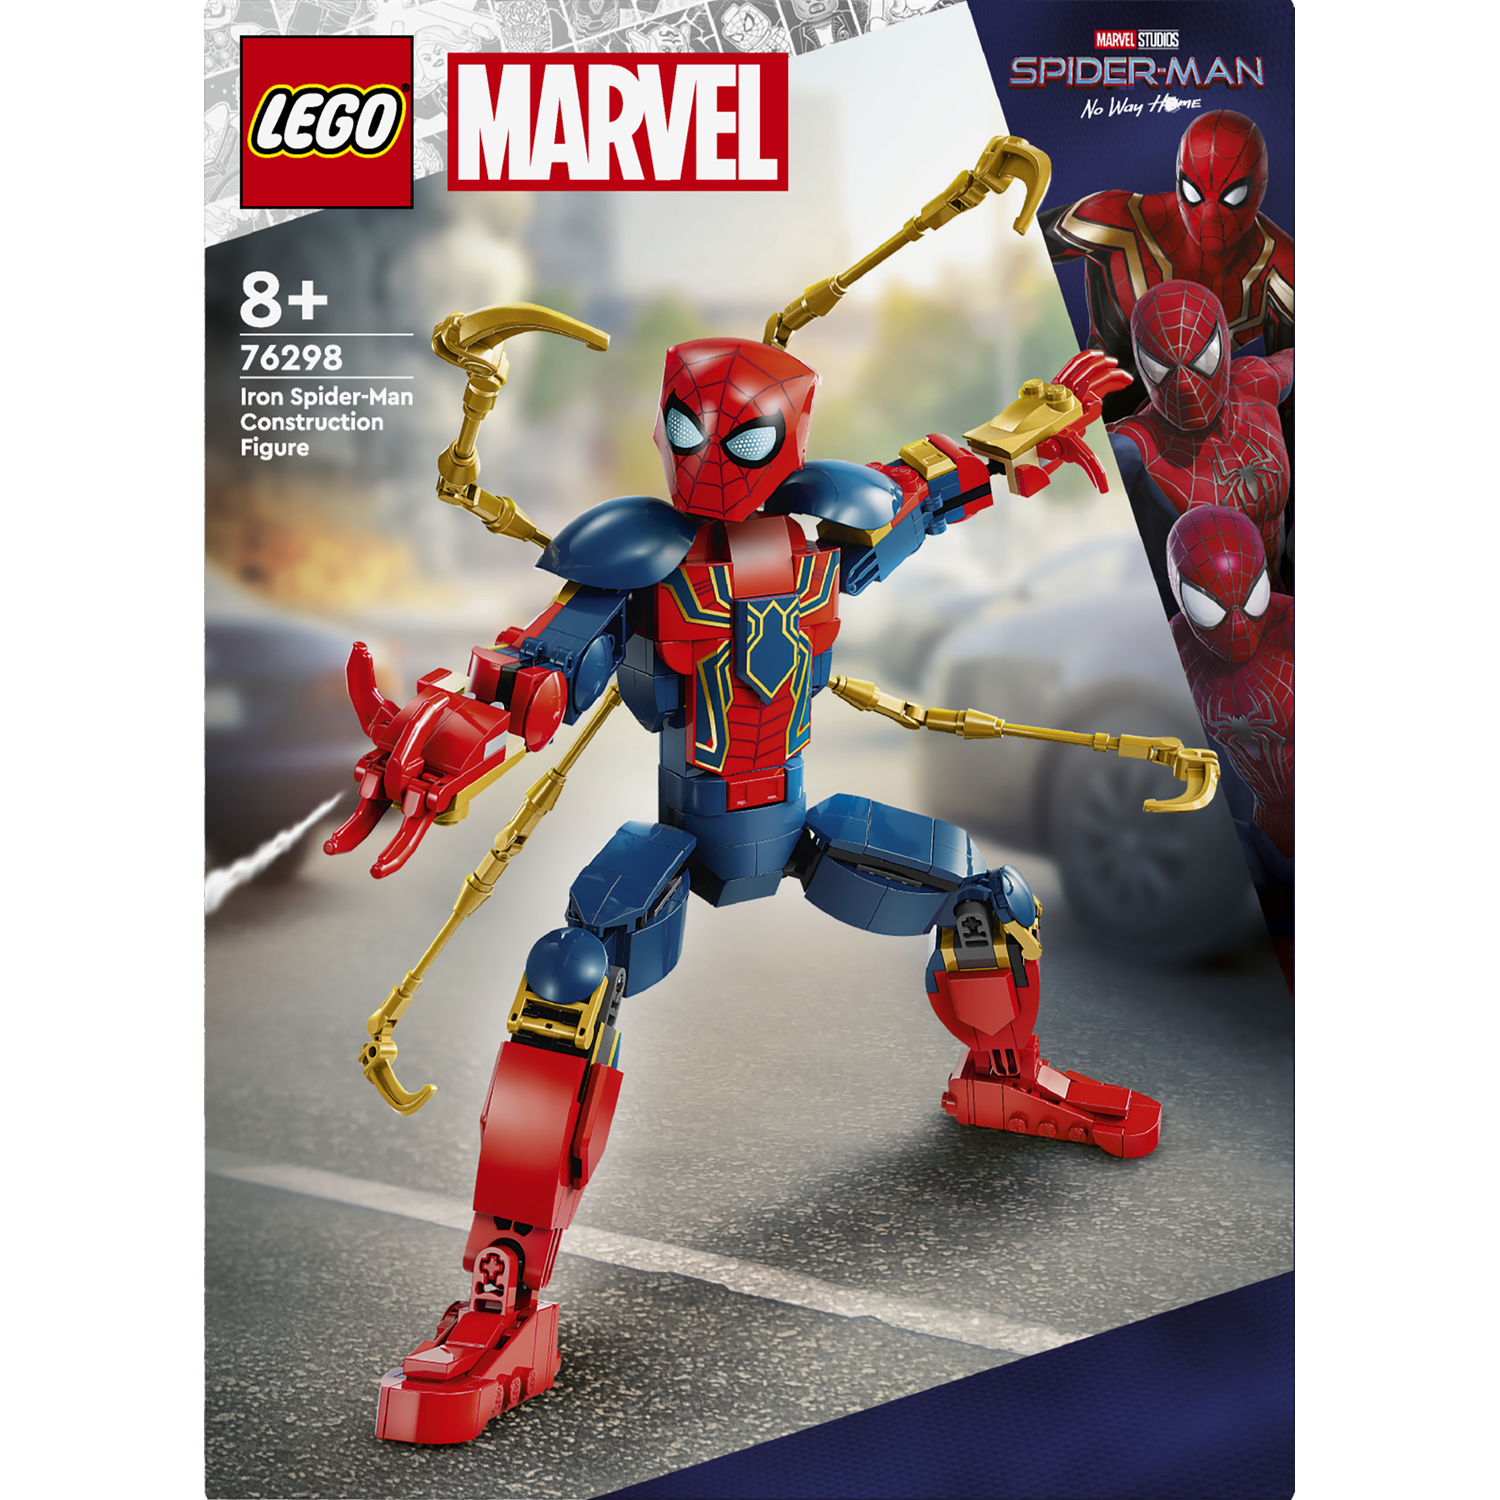 Конструктор LEGO Super Heroes Marvel Фигурка Железного Человека-Паука для сборки 303 детали (76298) - фото 1